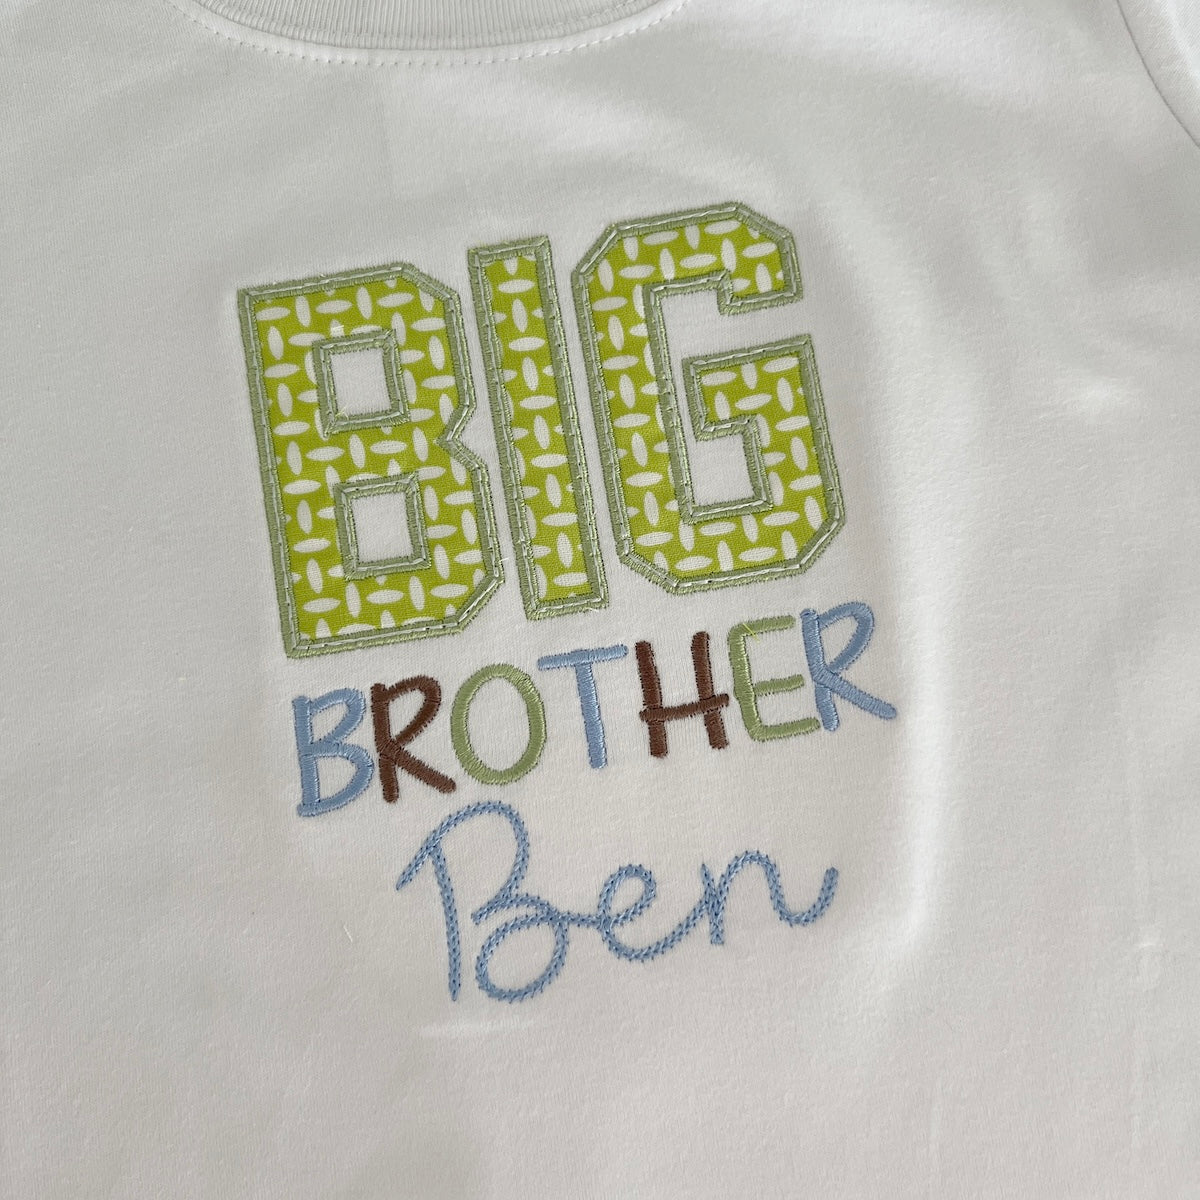 Big Brother Shirt